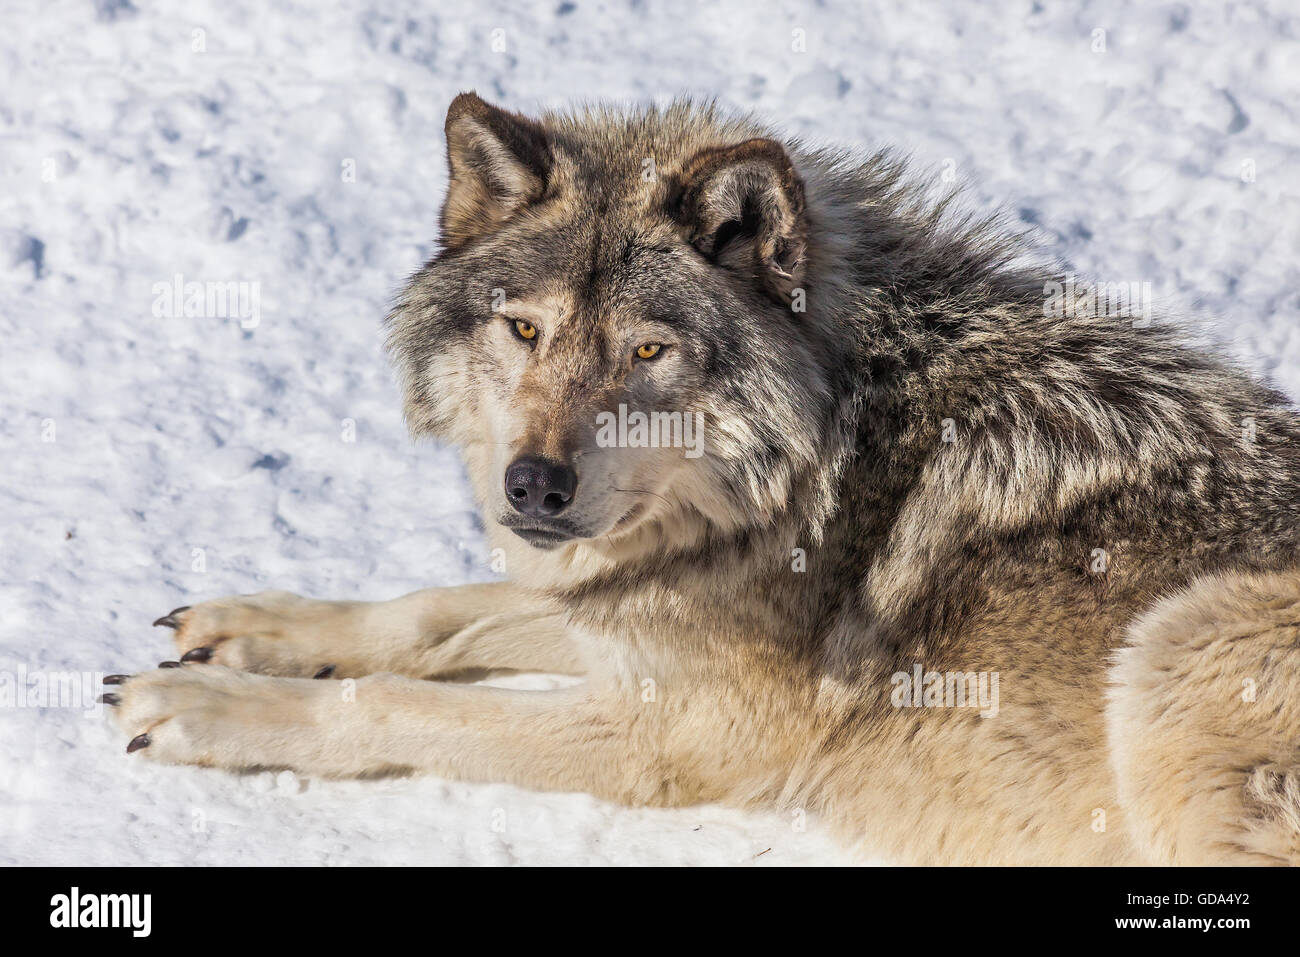 Primer plano de un lobo gris, en la nieve, mirando hacia la cámara. Foto de stock